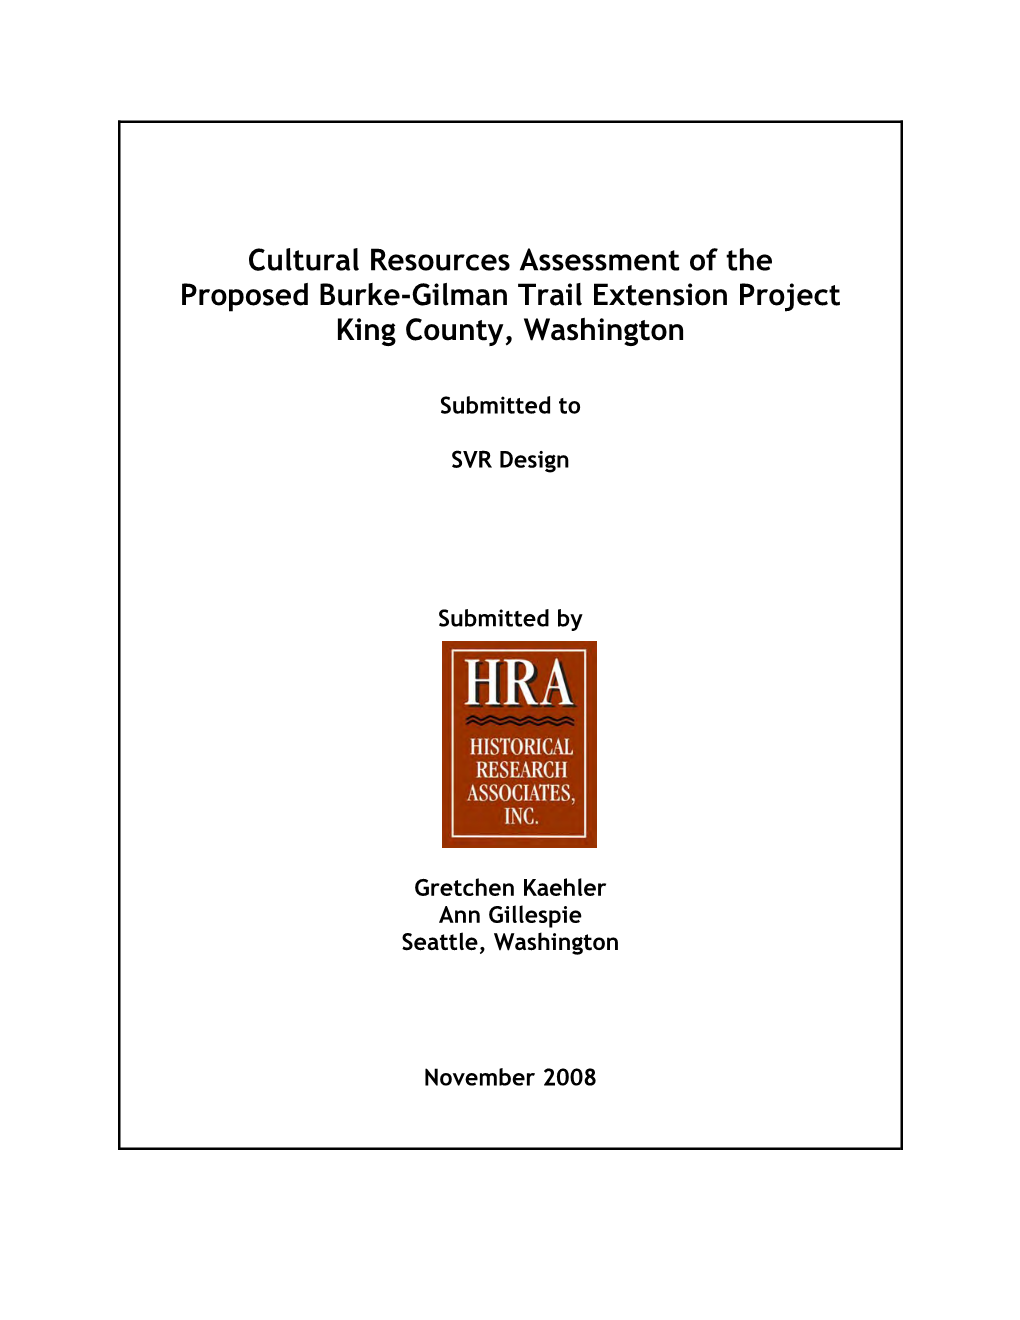 Cultural Resources Report